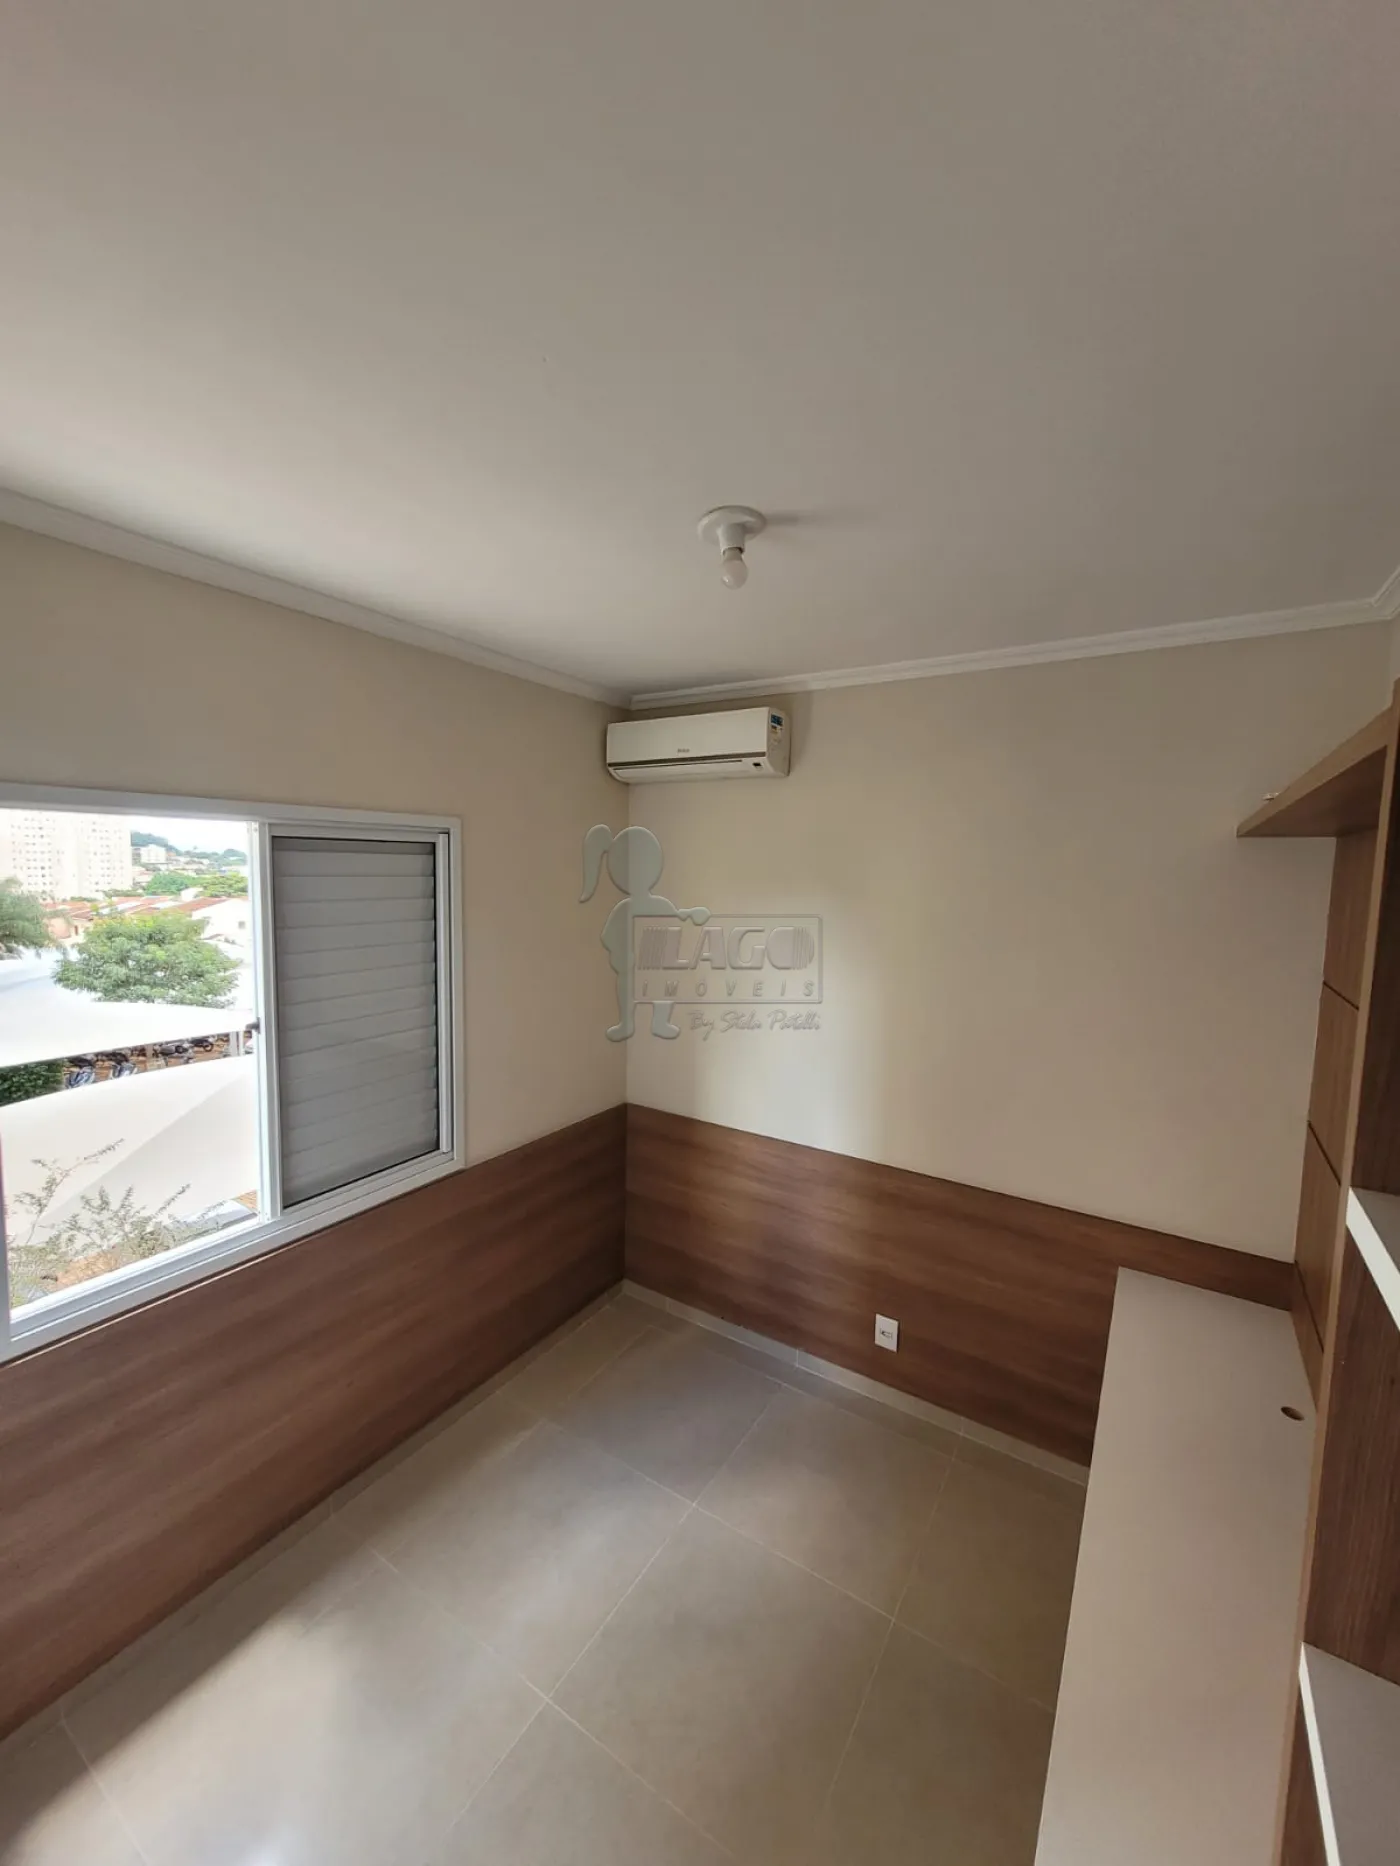 Comprar Apartamento / Padrão em Ribeirão Preto R$ 250.000,00 - Foto 5